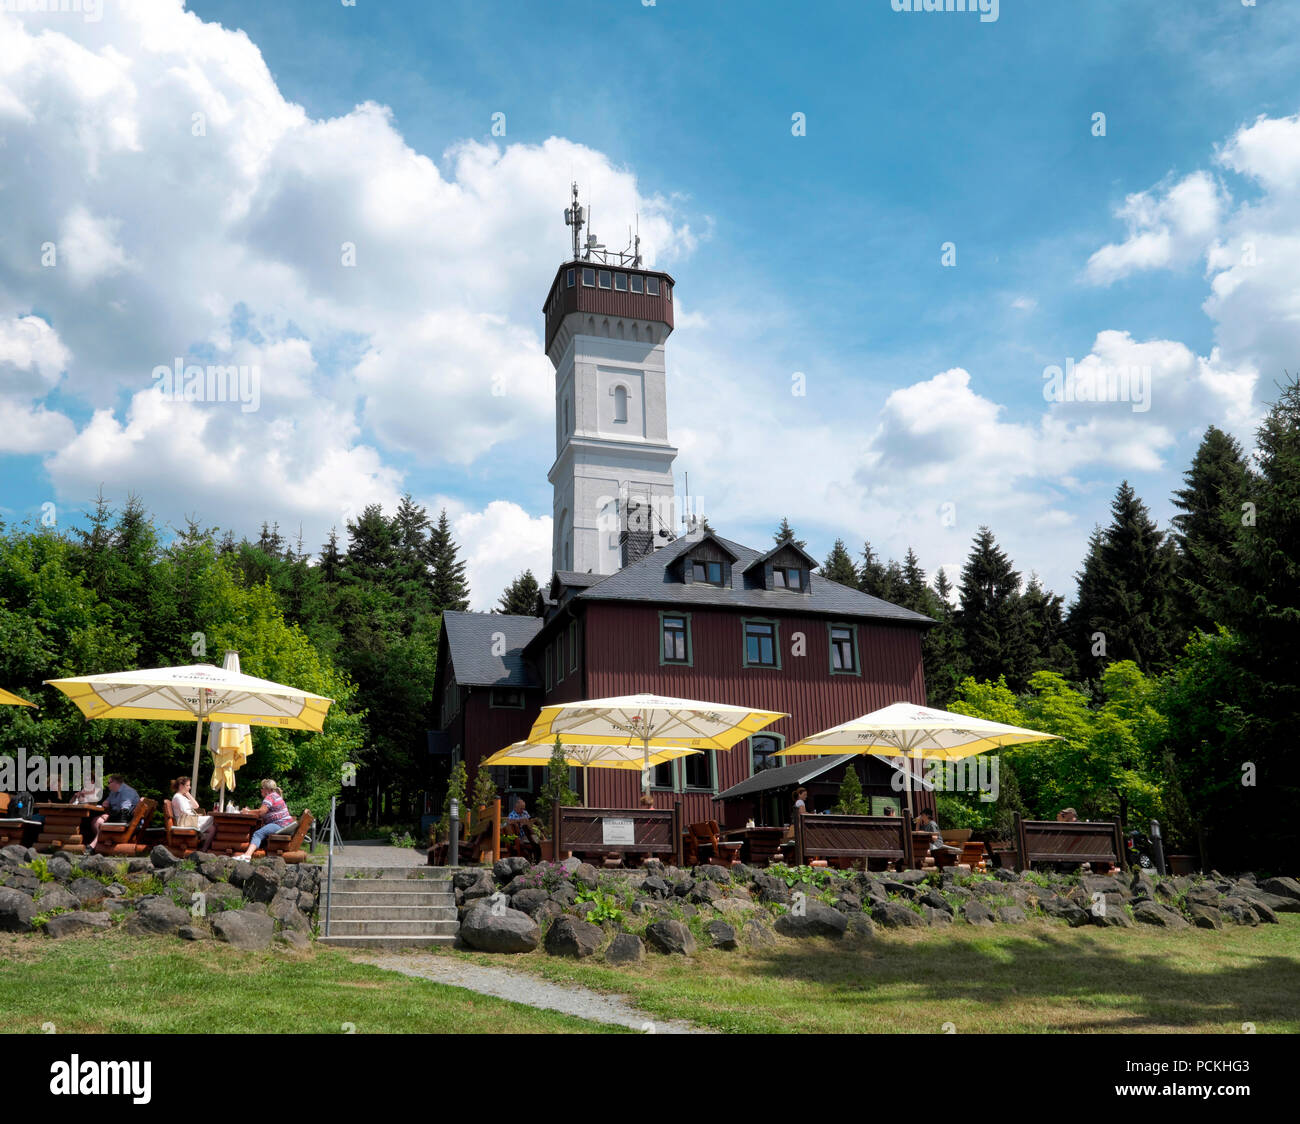 Albergo di montagna e della torre di vedetta, Pöhlberg, Annaberg-Buchholz, Monti Metalliferi, Bassa Sassonia, Germania Foto Stock